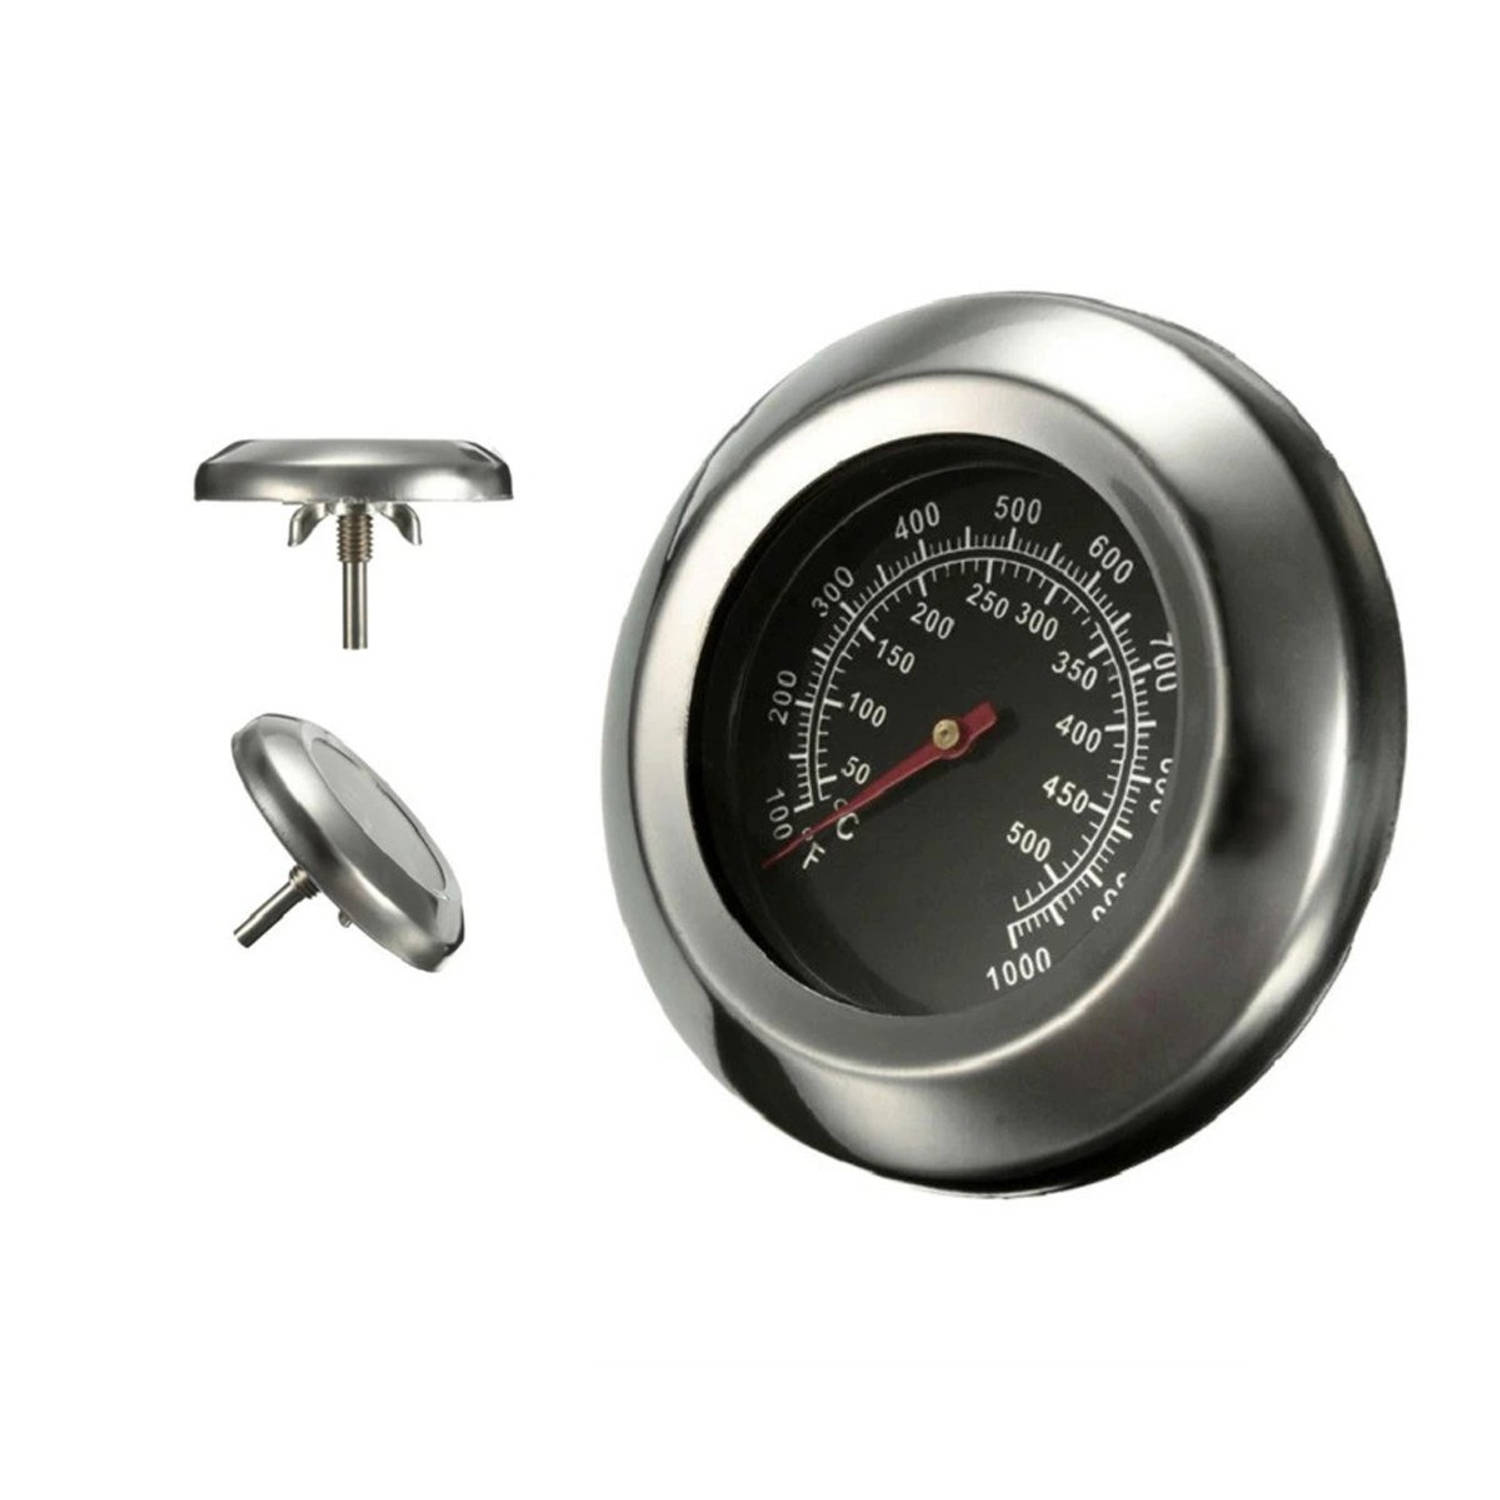 Blootstellen Richtlijnen Vooraf BBQ Thermometer - Draadloos - 50 Tot 550 Graden - RVS | Blokker